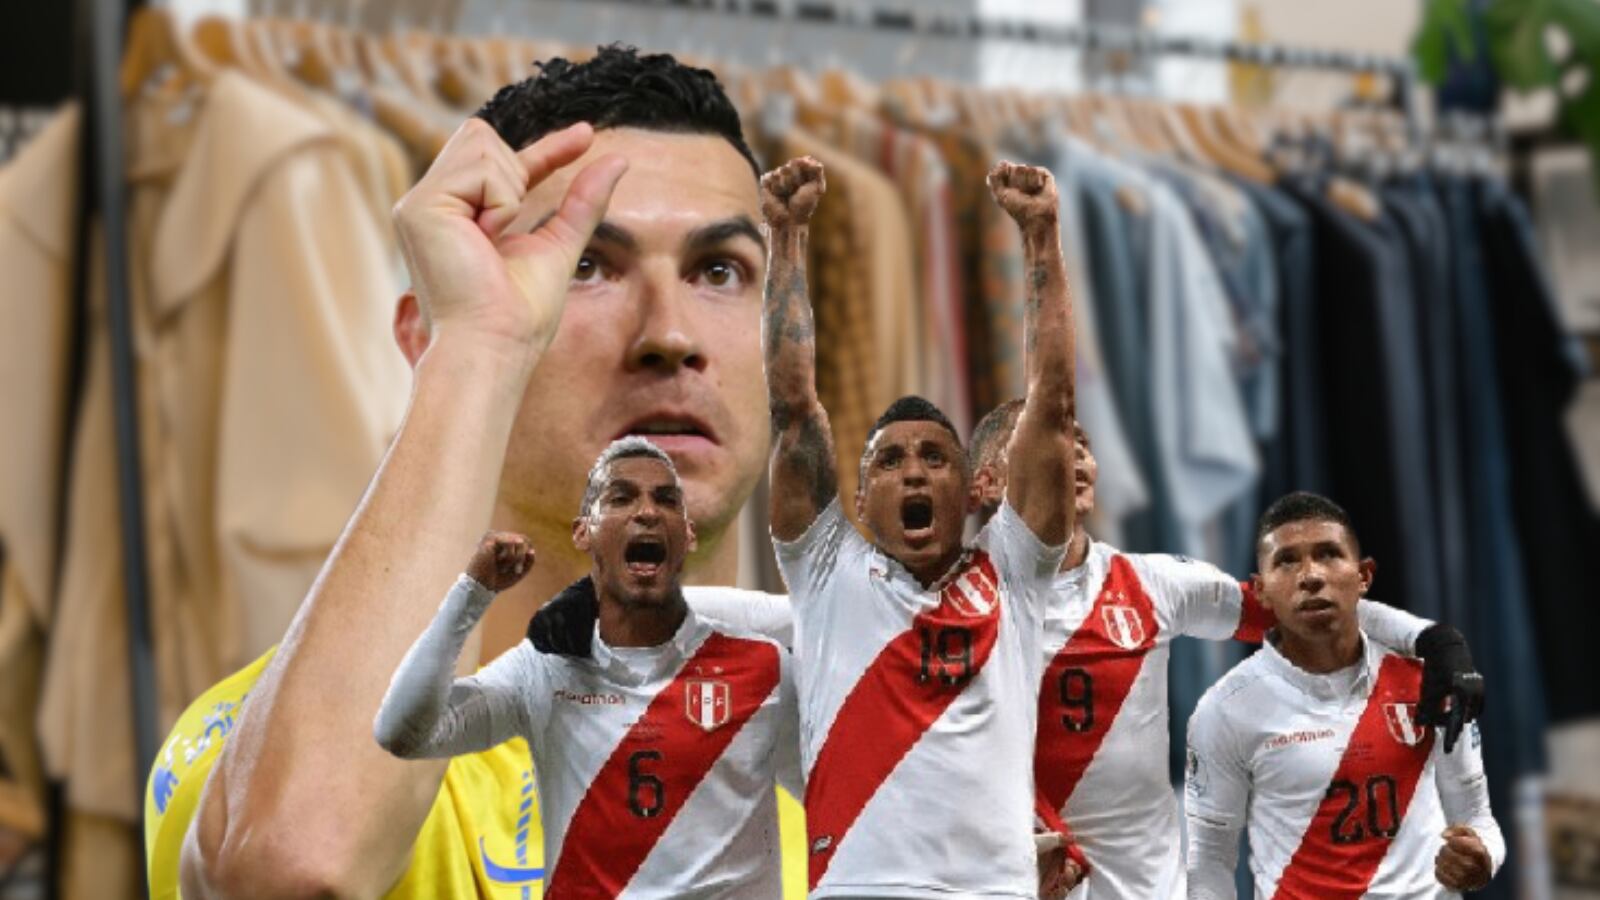 El peruano que le quitó una liga a Cristiano, hoy es millonario y vende ropa